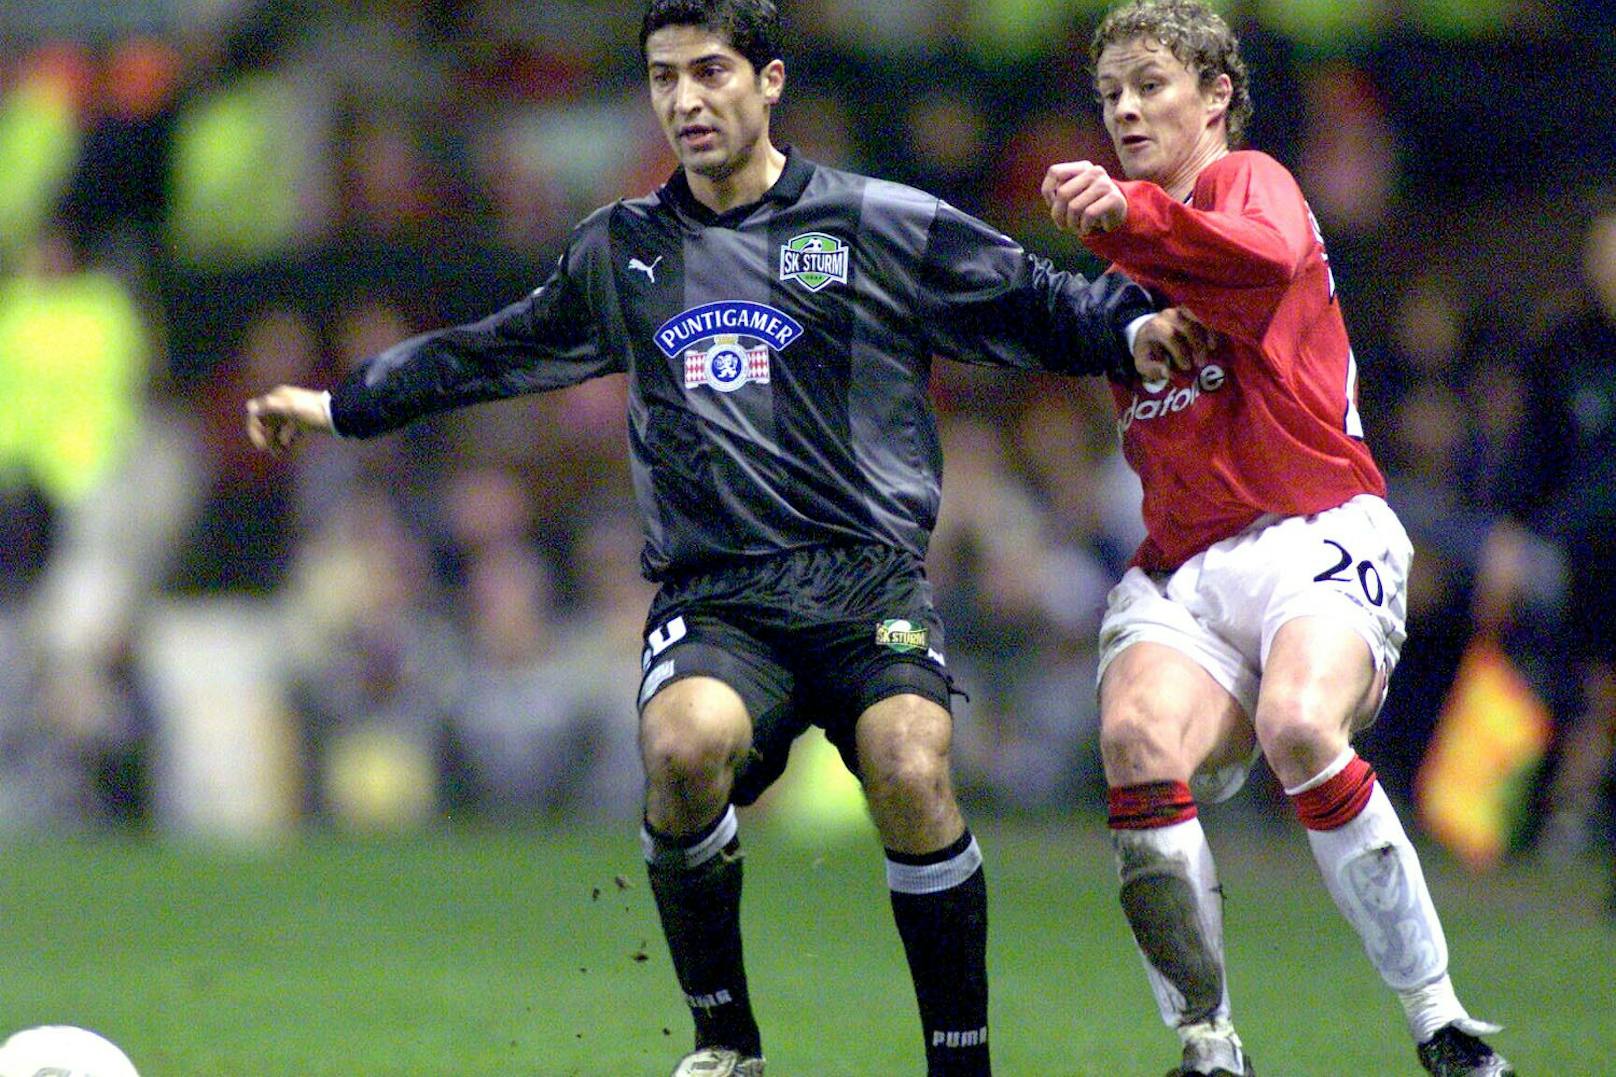 Mehrdad Minavand 2001 im Zweikampf mit dem heutigen Manchester-United-Trainer Ole Gunnar Solskjaer.